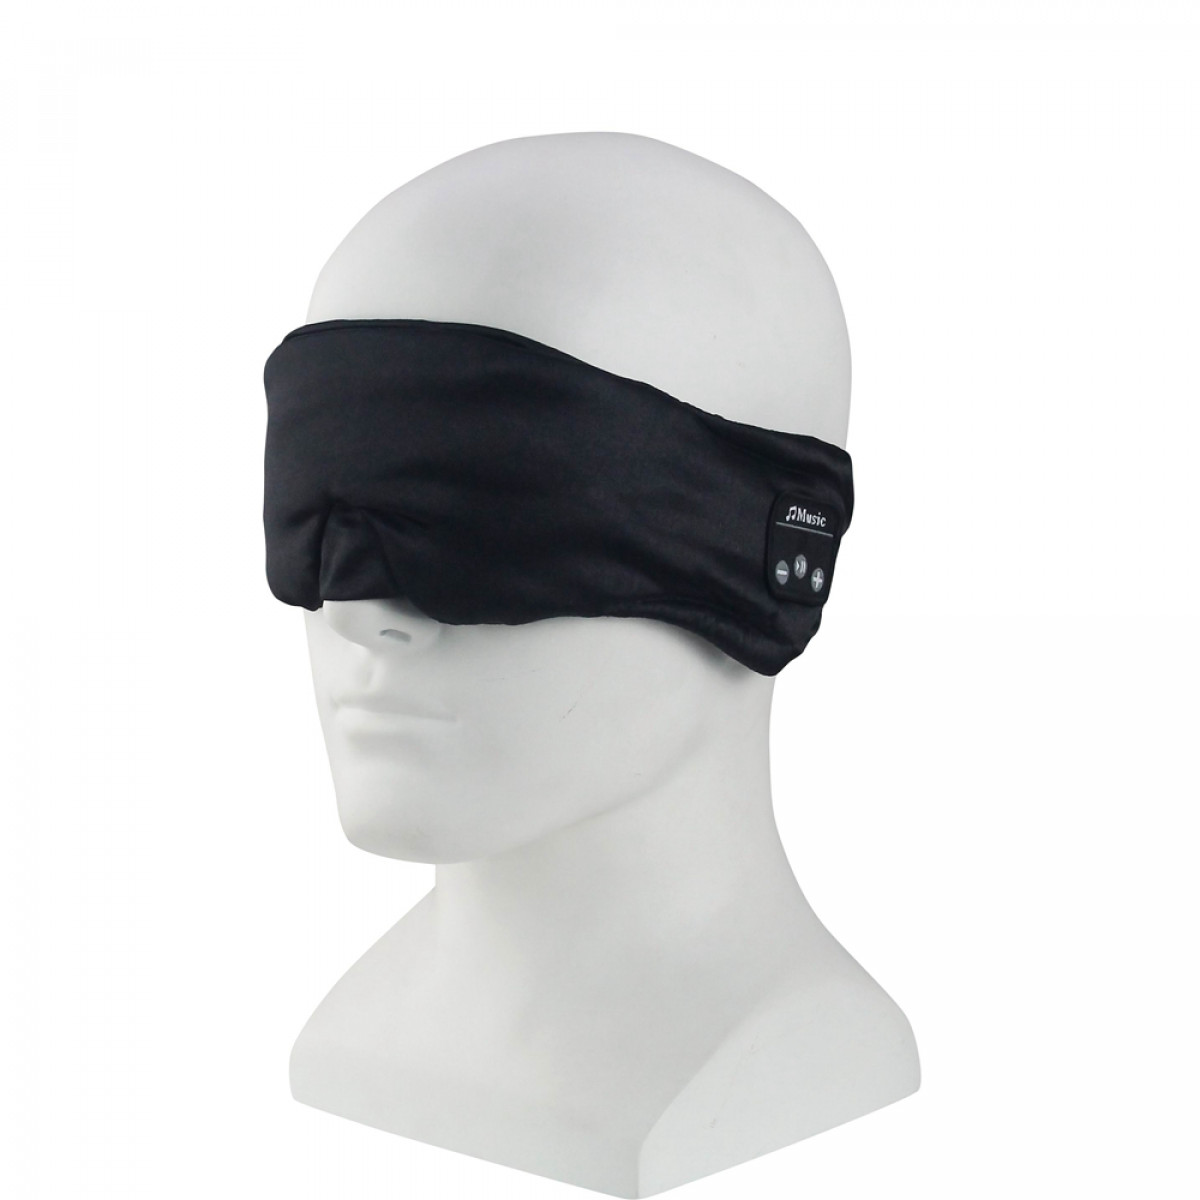 INF Schlafkopfhörer Bluetooth mit Stereolautspreche, 3D-Augenmaske Kopfhörer schwarz Open-ear Wireless